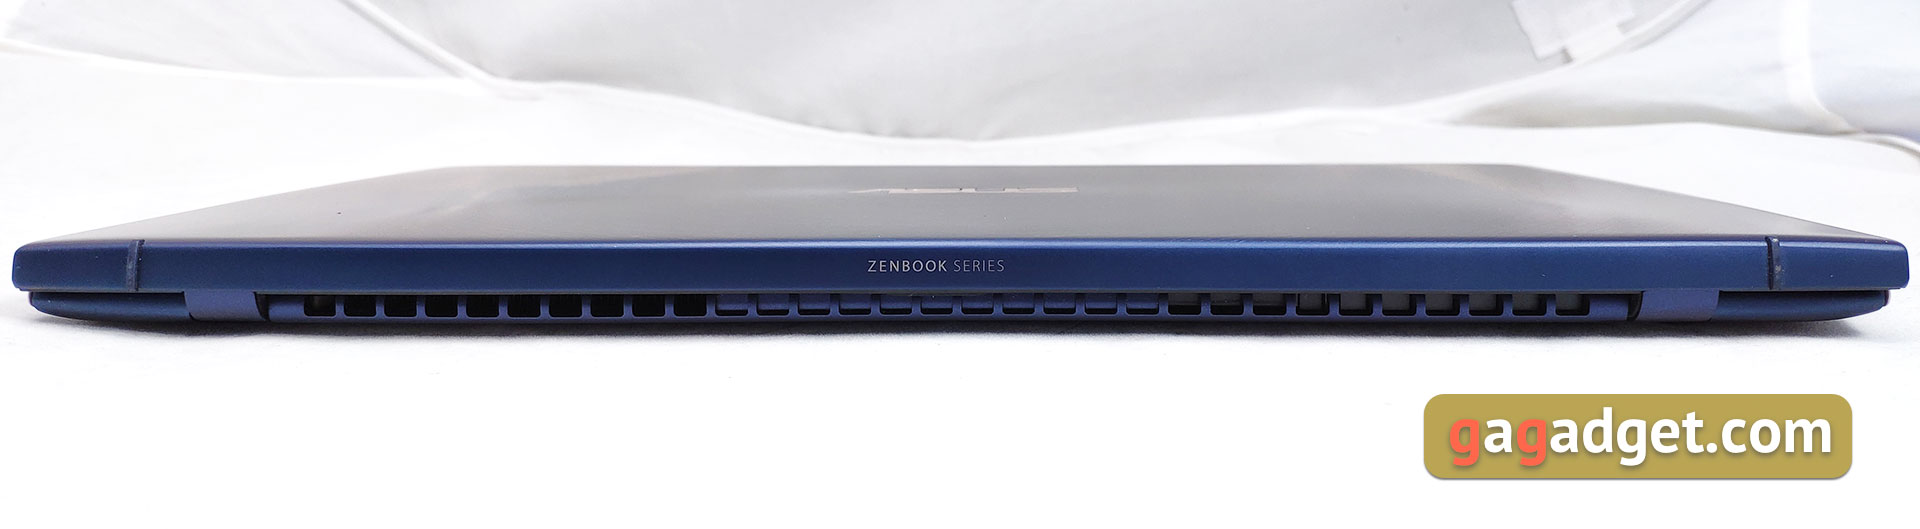 Обзор ASUS ZenBook 14 UX433FN: универсальный ультрабук на все случаи жизни-16